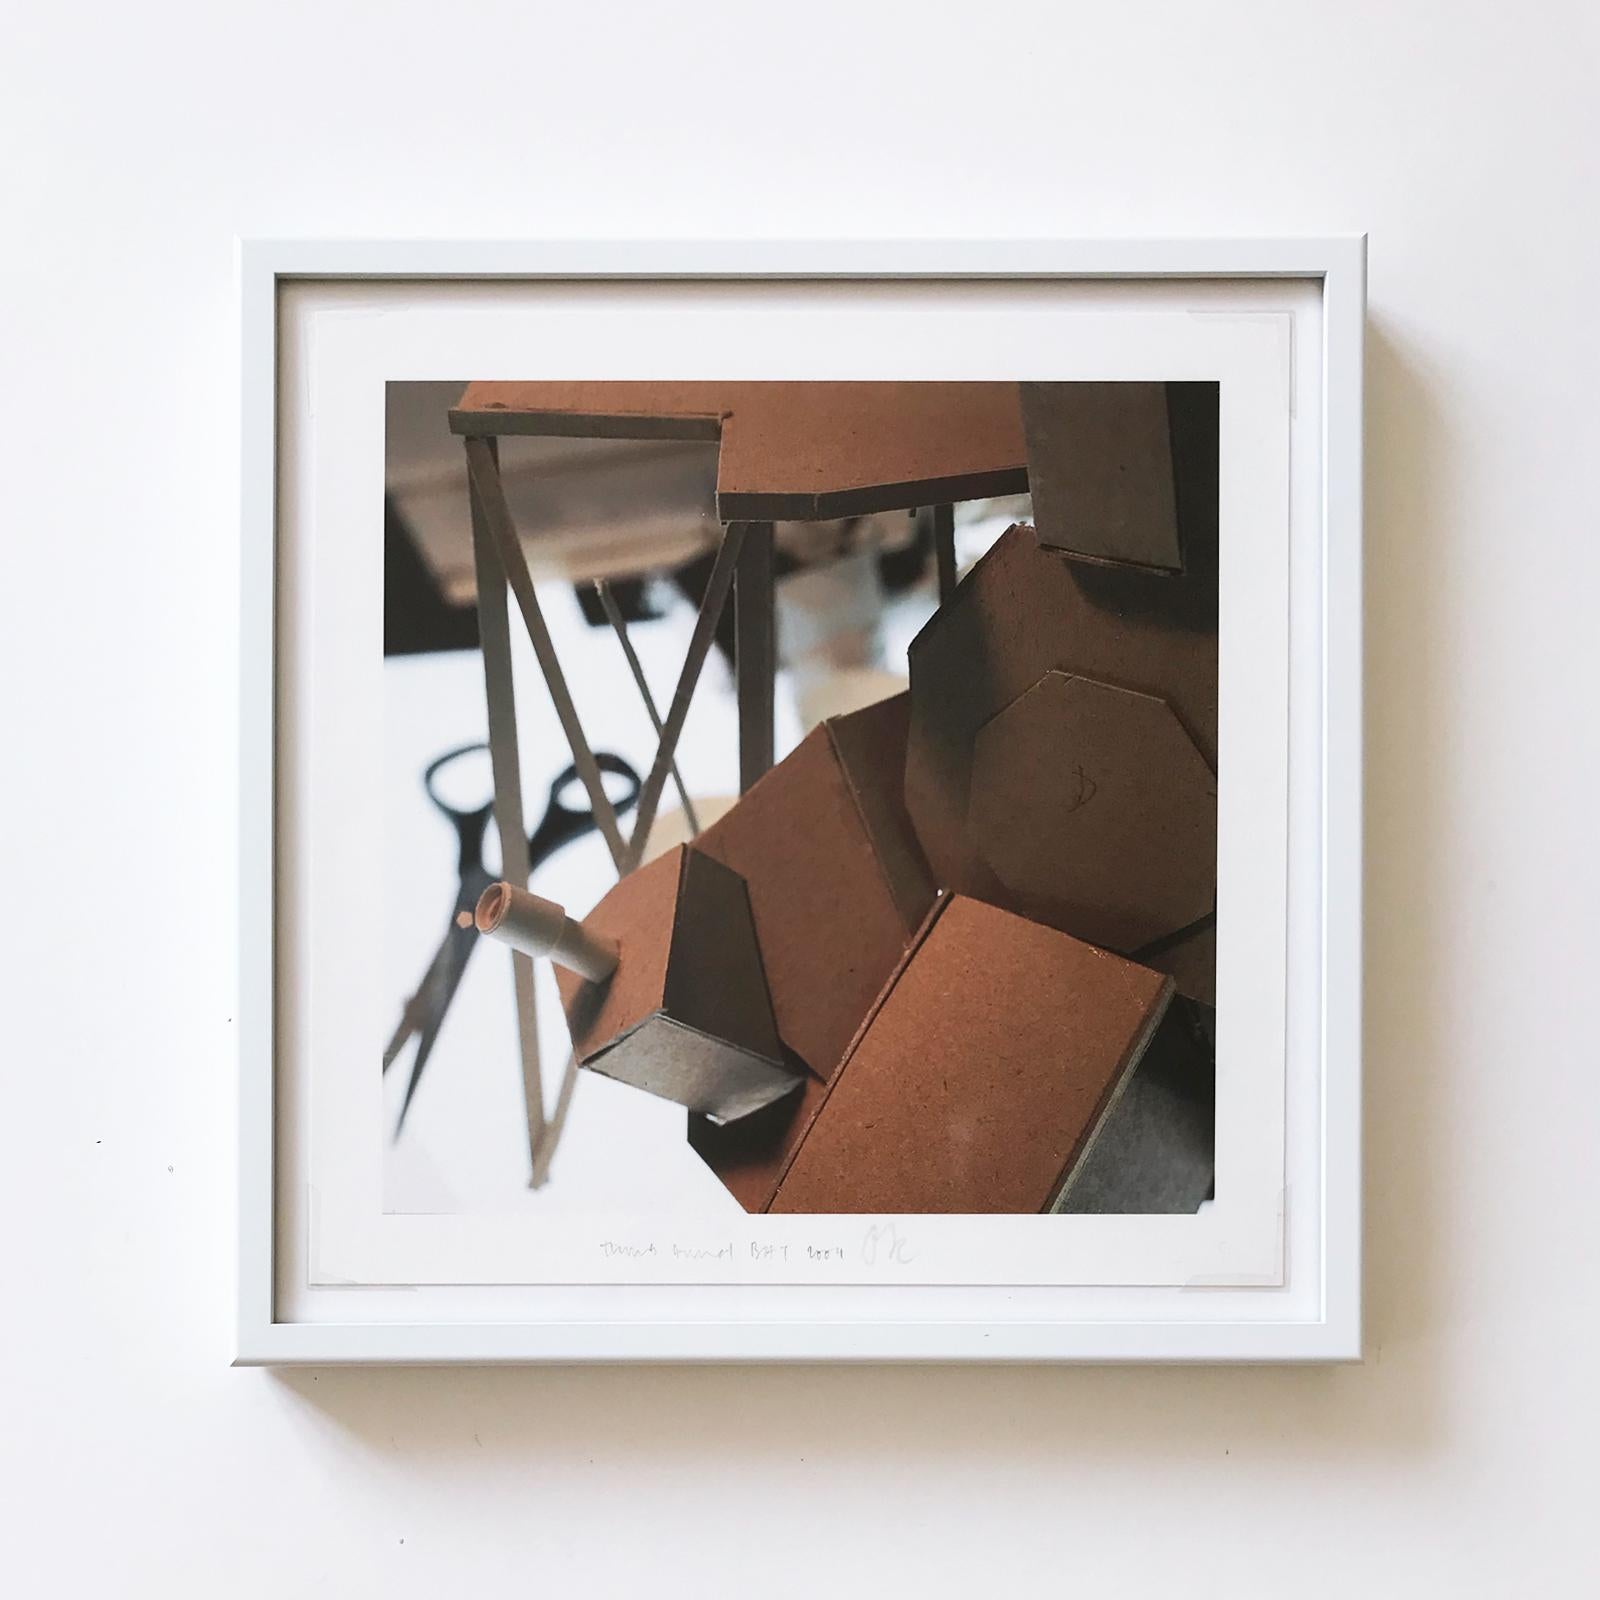 Thomas Demand (Allemand, né en 1964)
Cinq projets (simulateur), 2004
Moyen : Suite de 5 tirages pigmentaires numériques sur papier photo (chacun encadré)
Dimensions : chaque 28 x 28 cm
Dimensions encadrées : 32,5 x 32,5 x 2,7 cm
Edition de 60 :